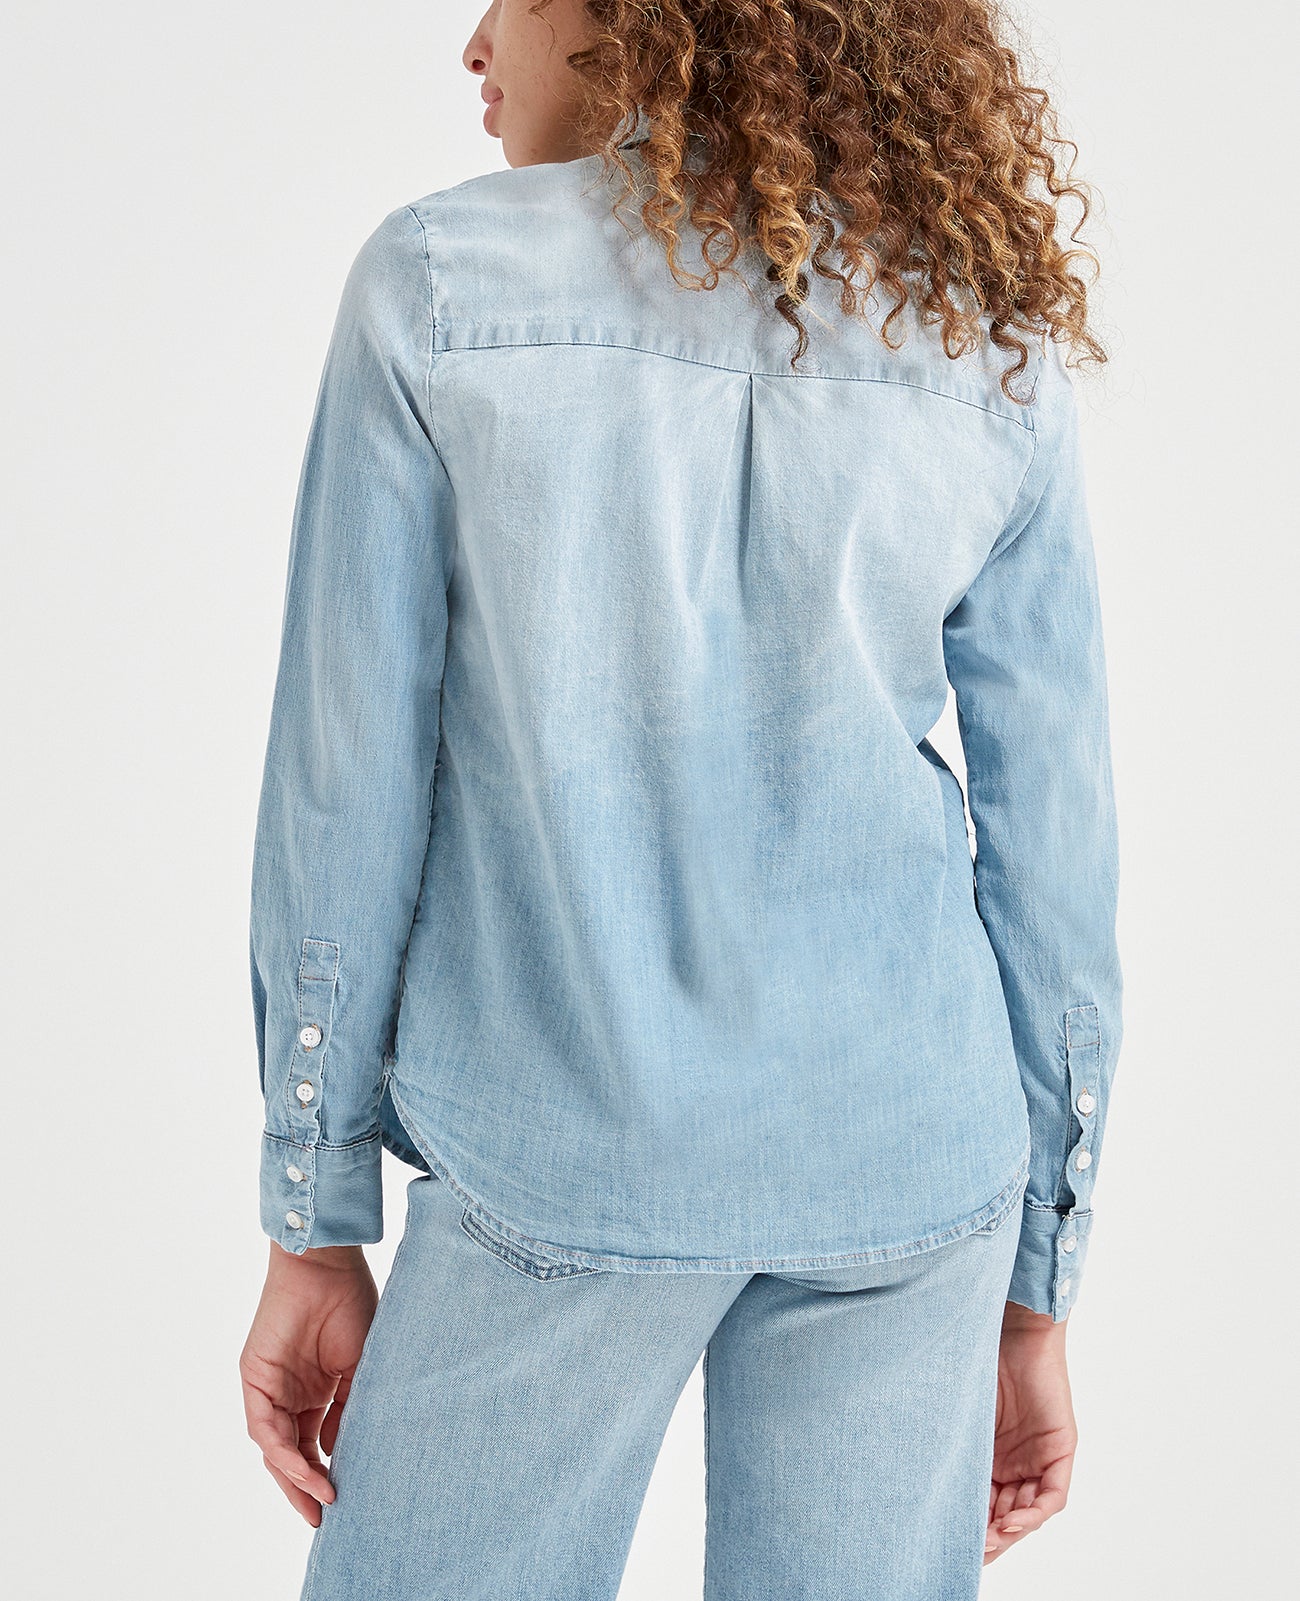 Cade Shirt Azure Light Classic Button Up Shirt Women Tops Photo 3